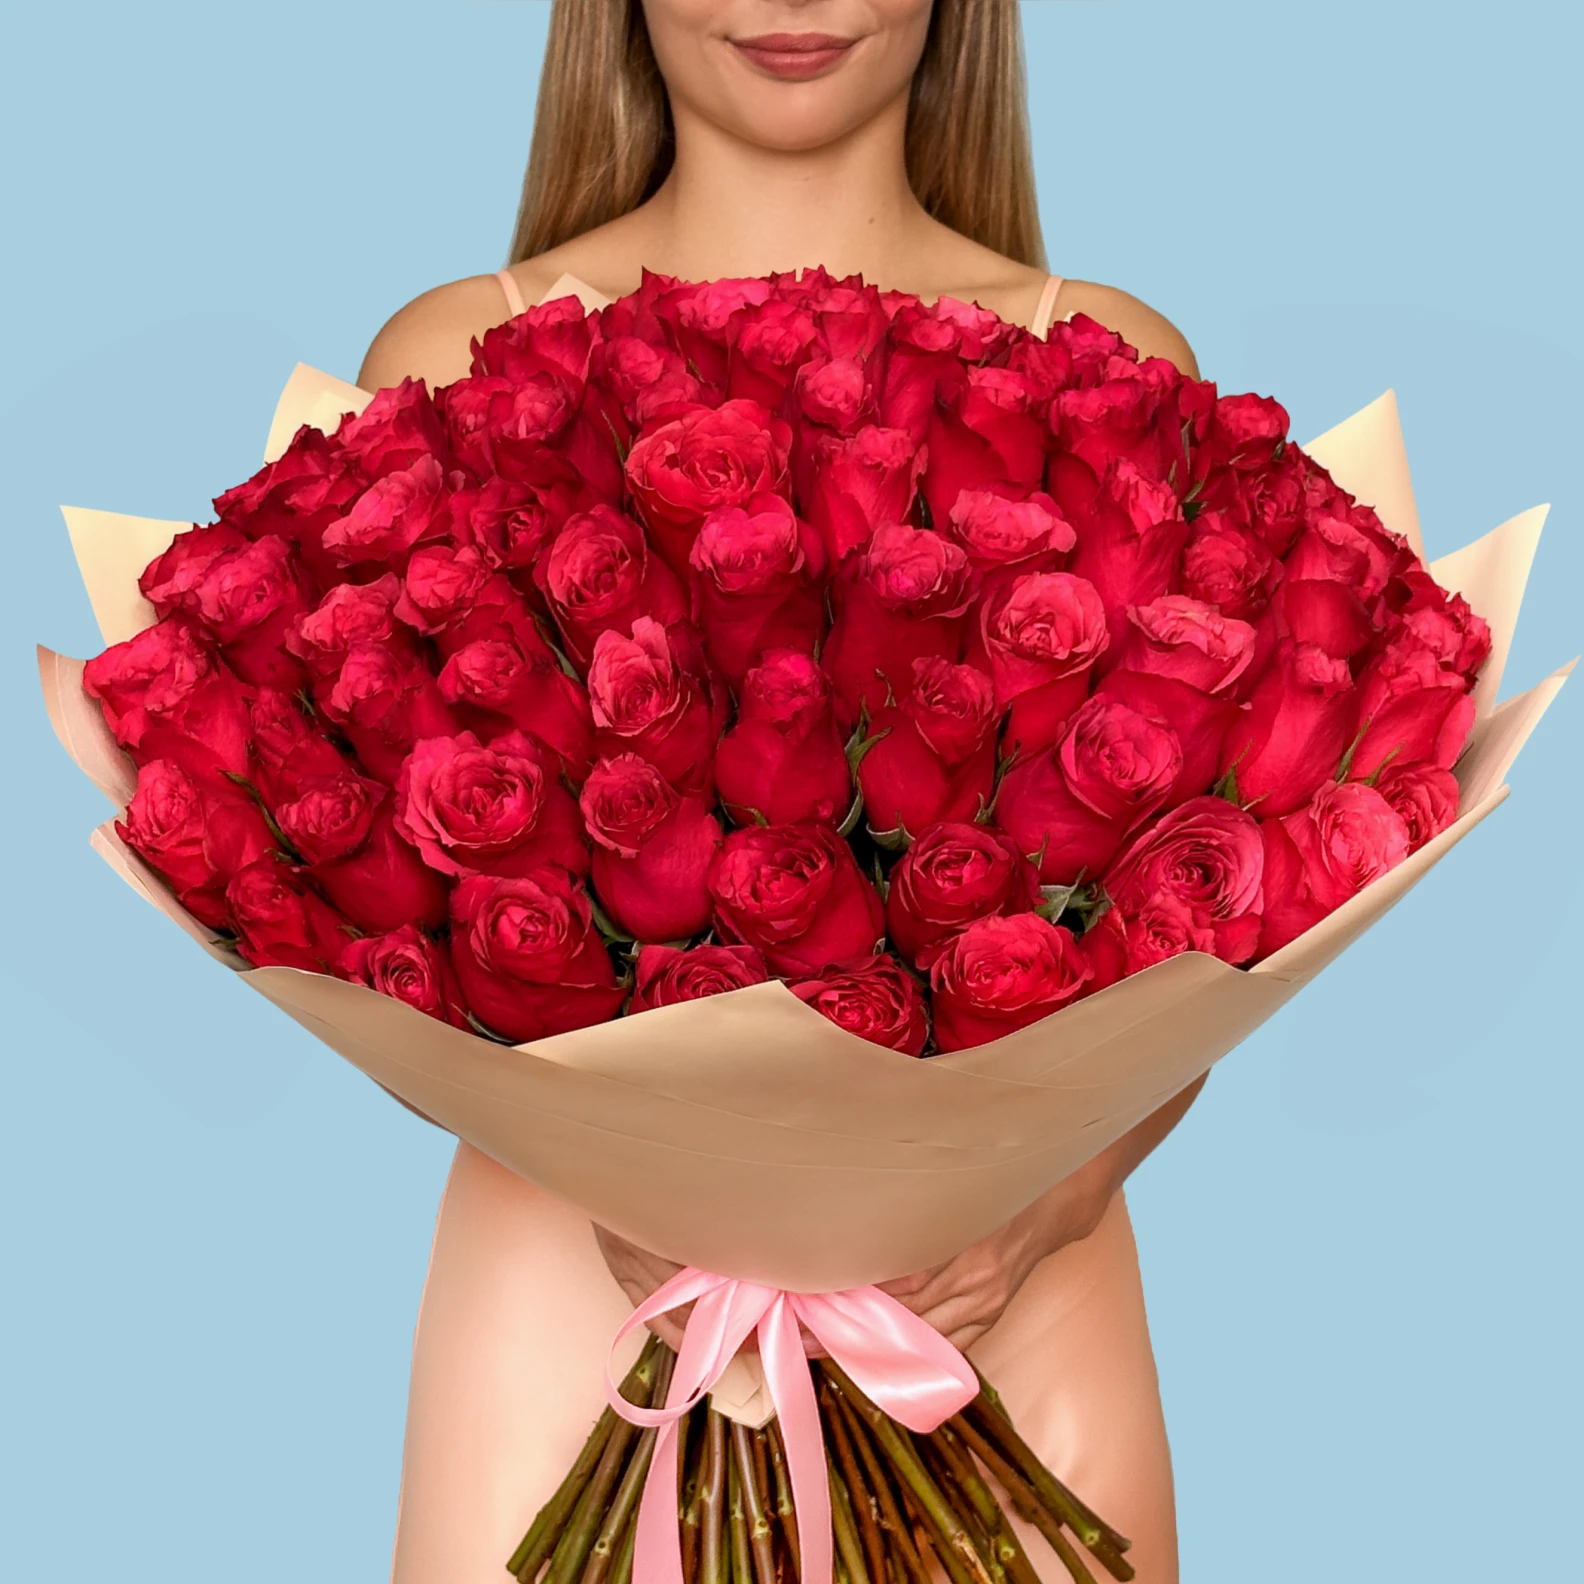 100 Premium Hot Pink Roses - image №1